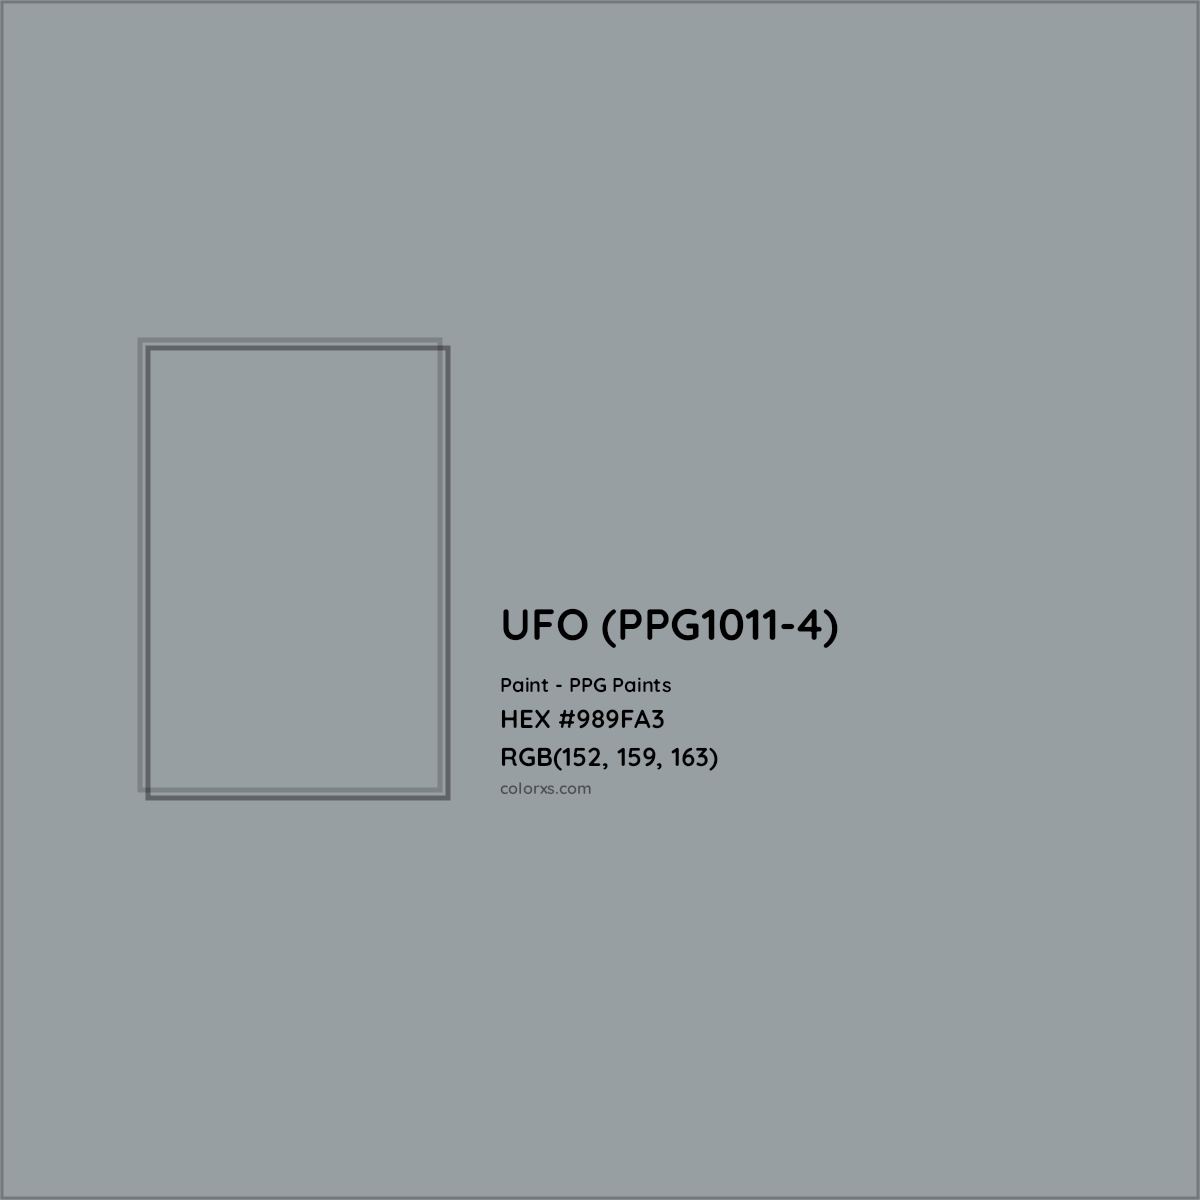 HEX #989FA3 UFO (PPG1011-4) Paint PPG Paints - Color Code